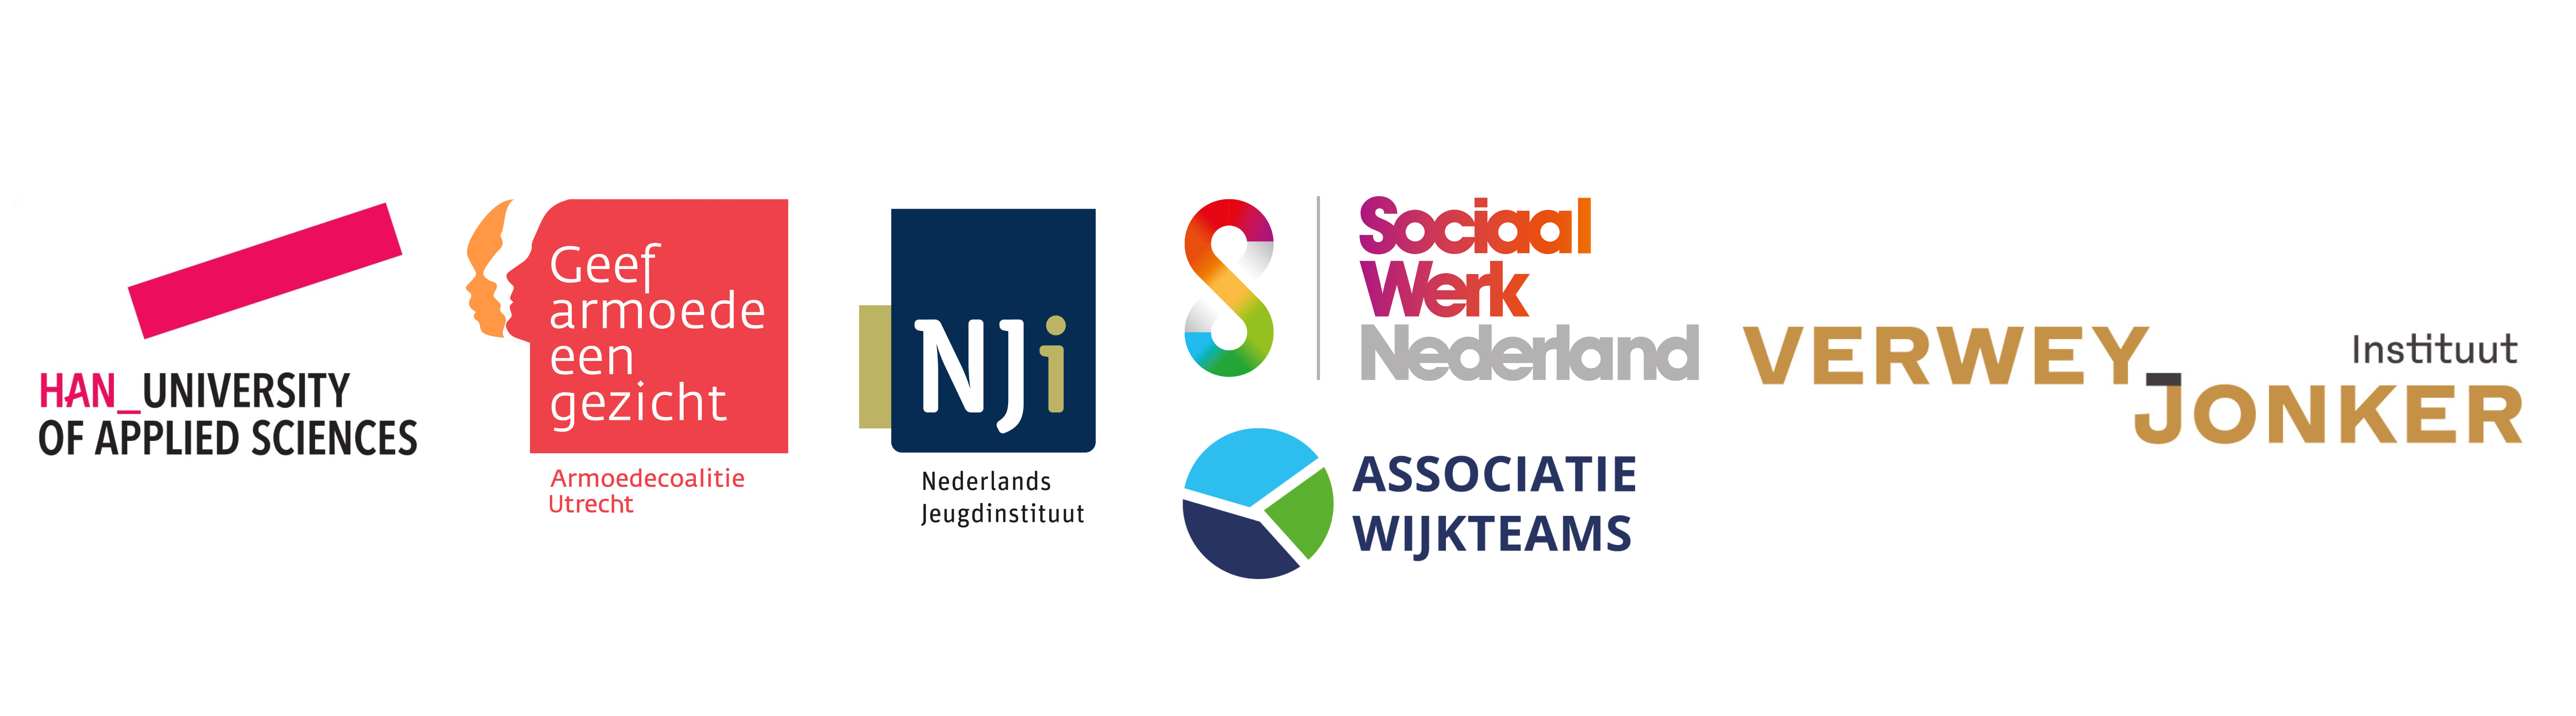 Logo's van de HAN, Armoedecoalitie Utrecht, het NJi, Sociaal Werk Nederland, Associatie Wijkteams en het Verwey-Jonker Instituut